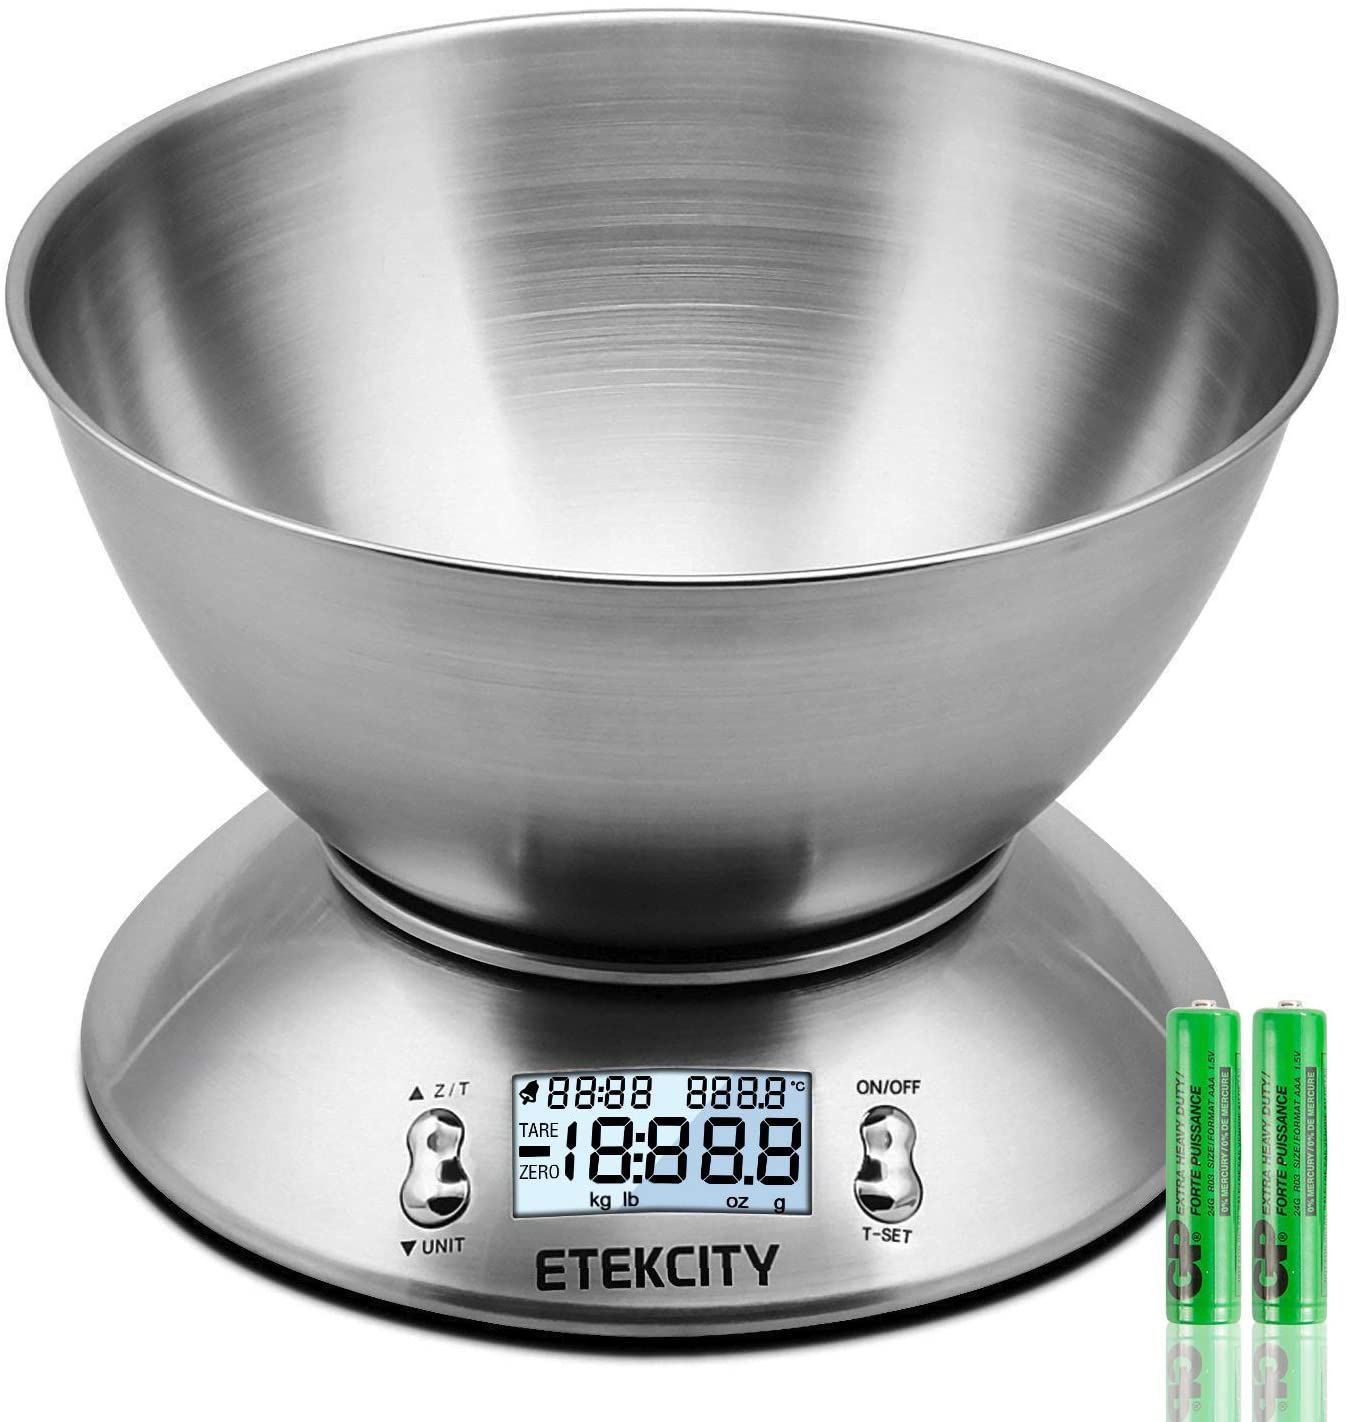 Etekcity Bilancia da Cucina Elettronica in Acciaio Inossidabile 5kg/ 11lb, Ciotola Mescolata, Timer Allarme, Indicatore Temperatura, Display Retroilluminato, Argento